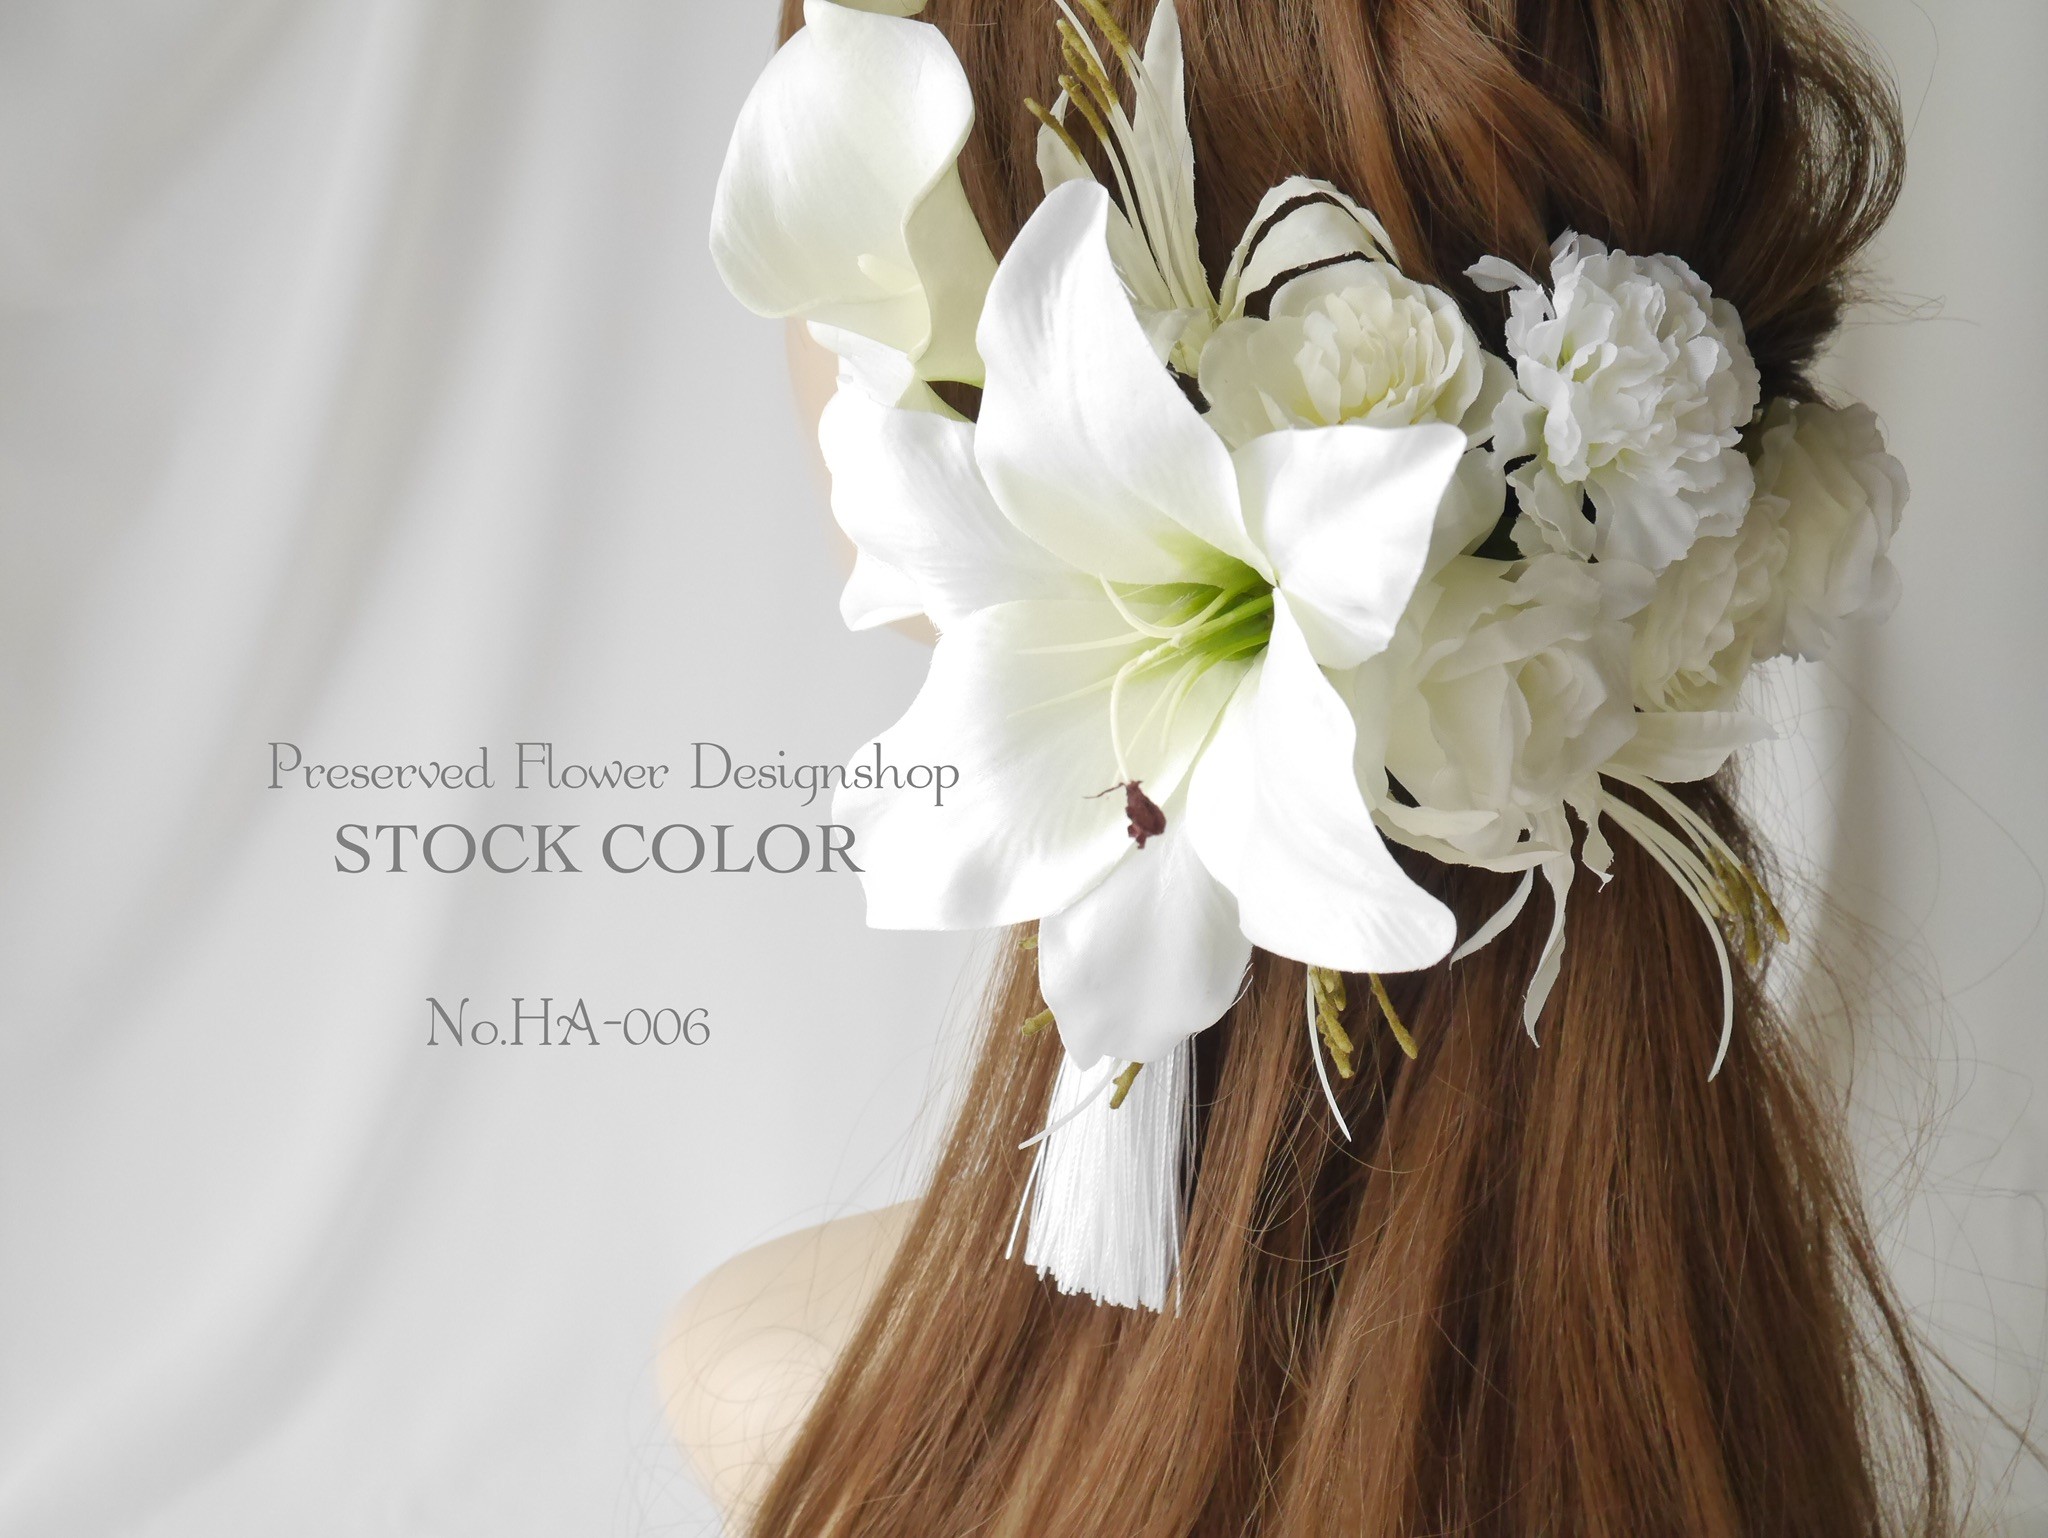 ユリとカラーの和装髪飾り ヘアアクセサリー 成人式など結婚式に Iichi ハンドメイド クラフト作品 手仕事品の通販